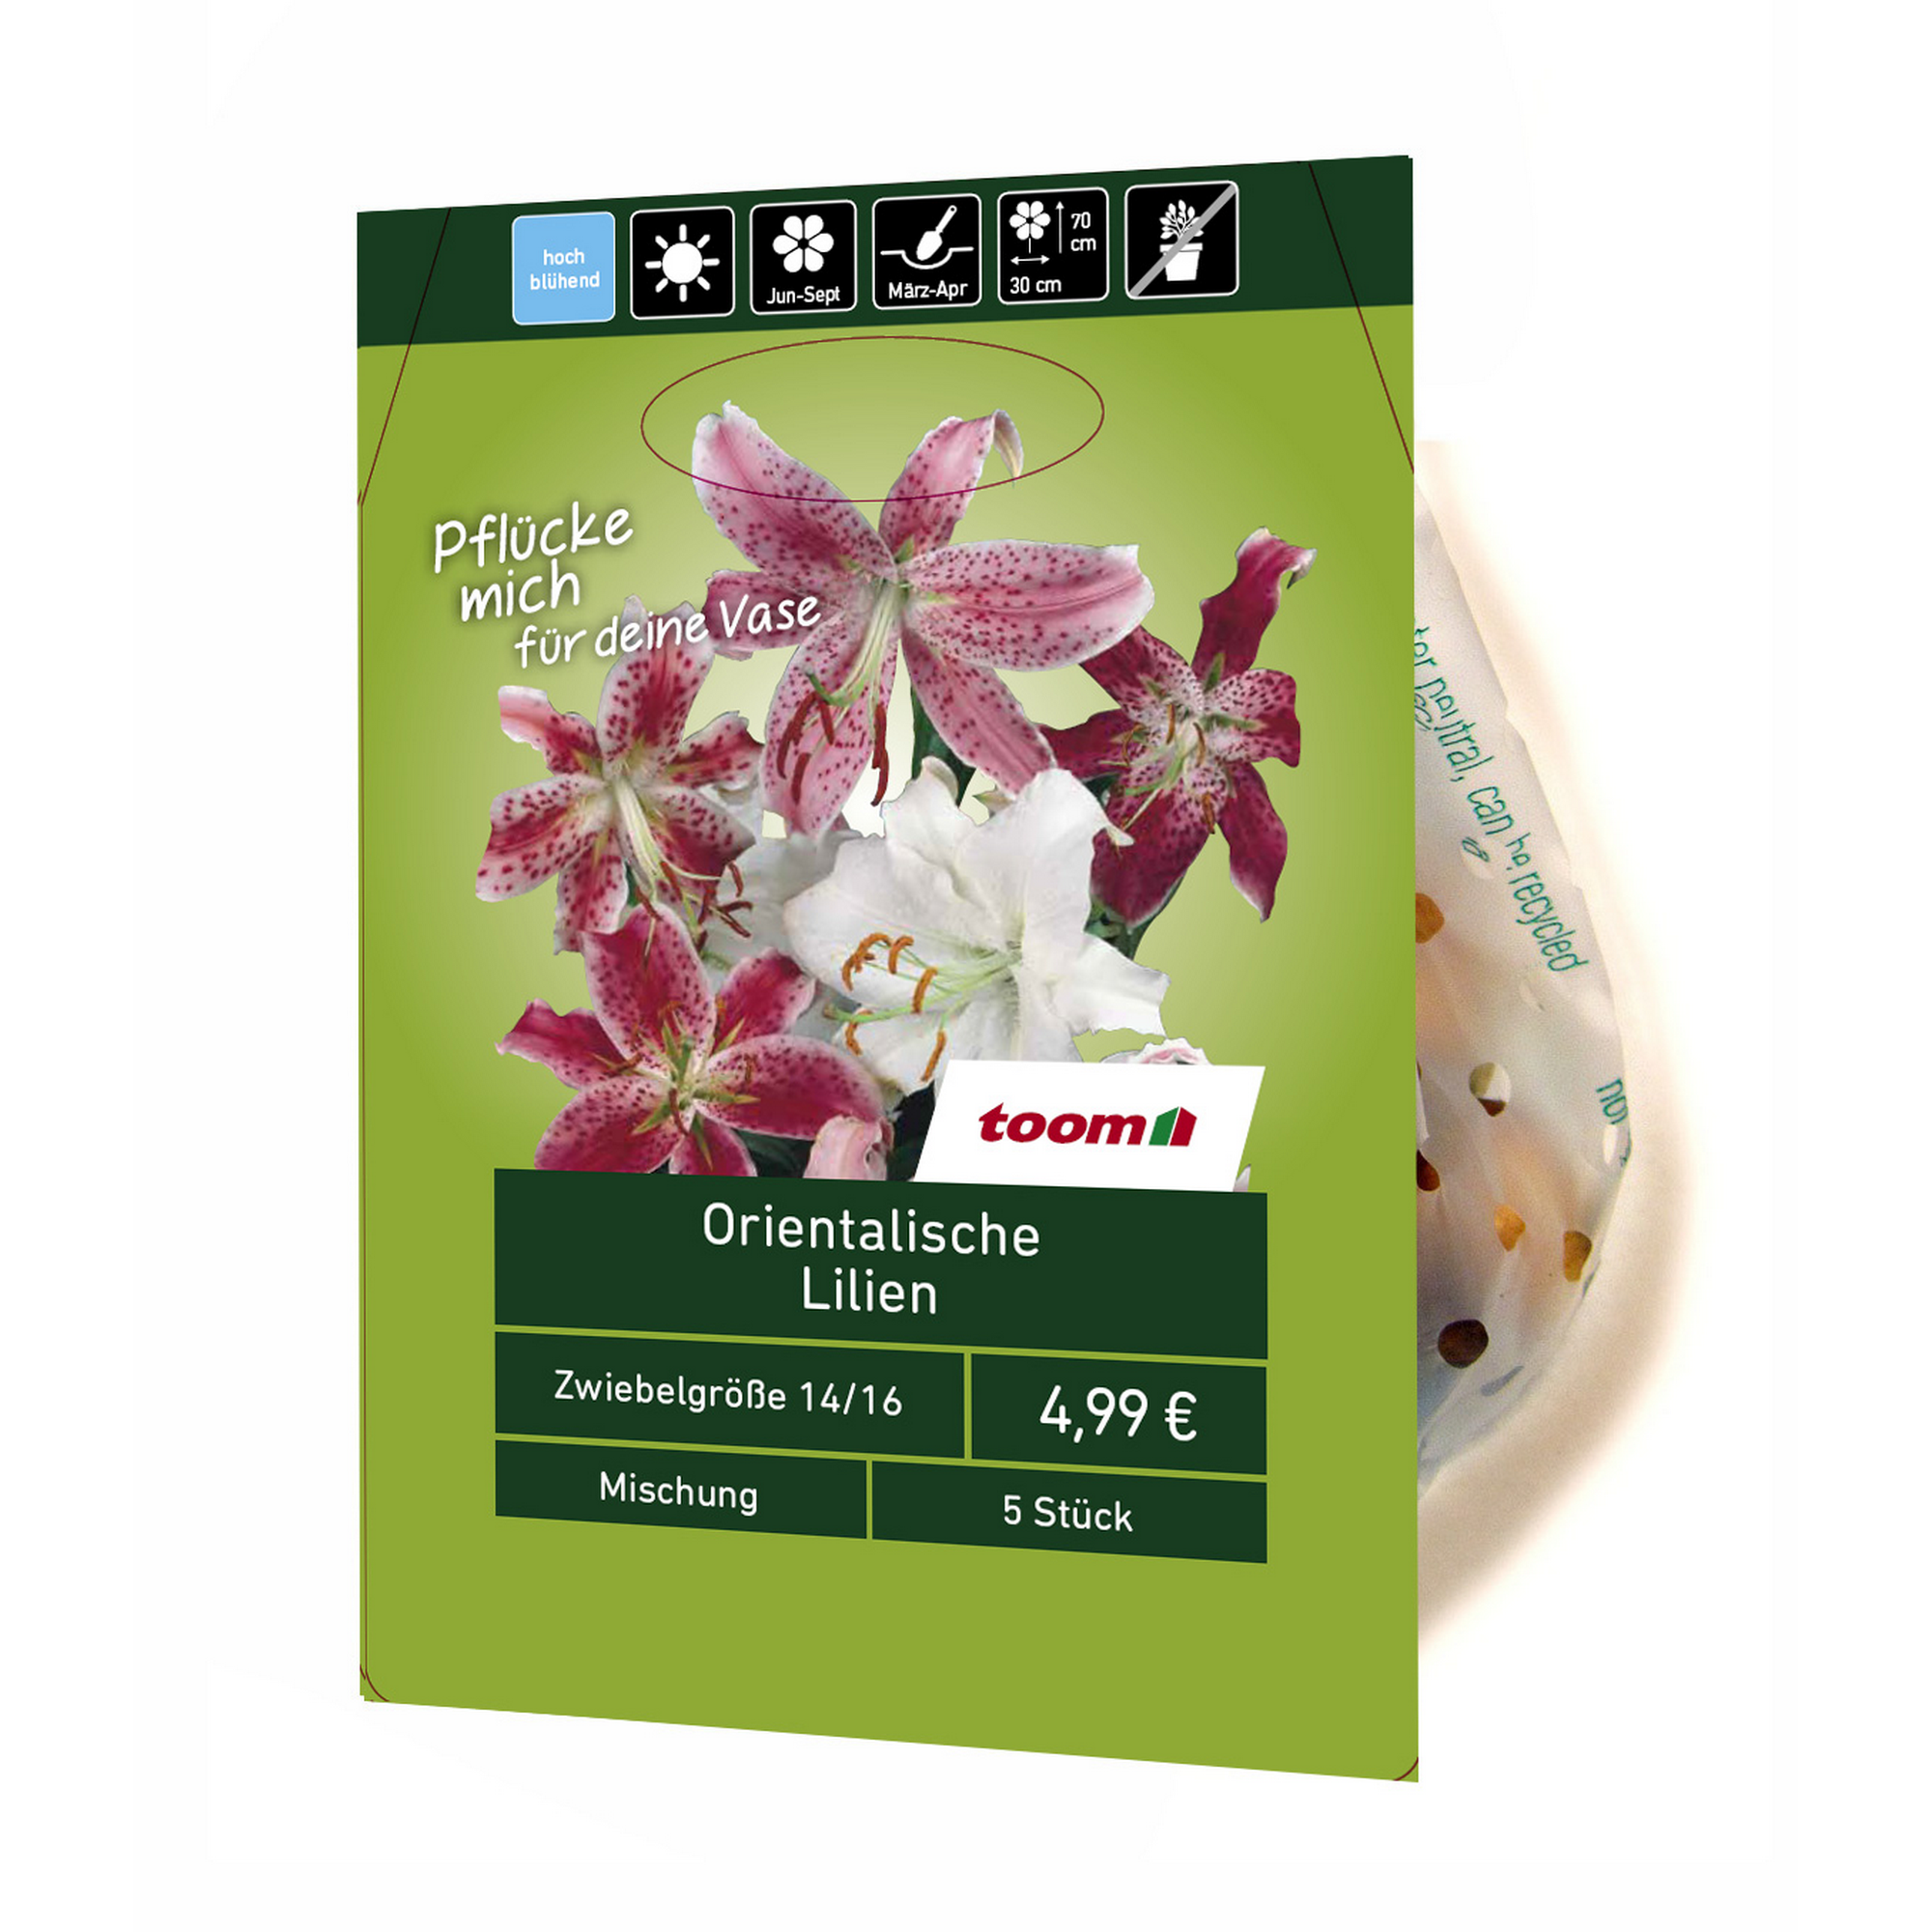 Orientalische Lilien 5 Stück + product picture